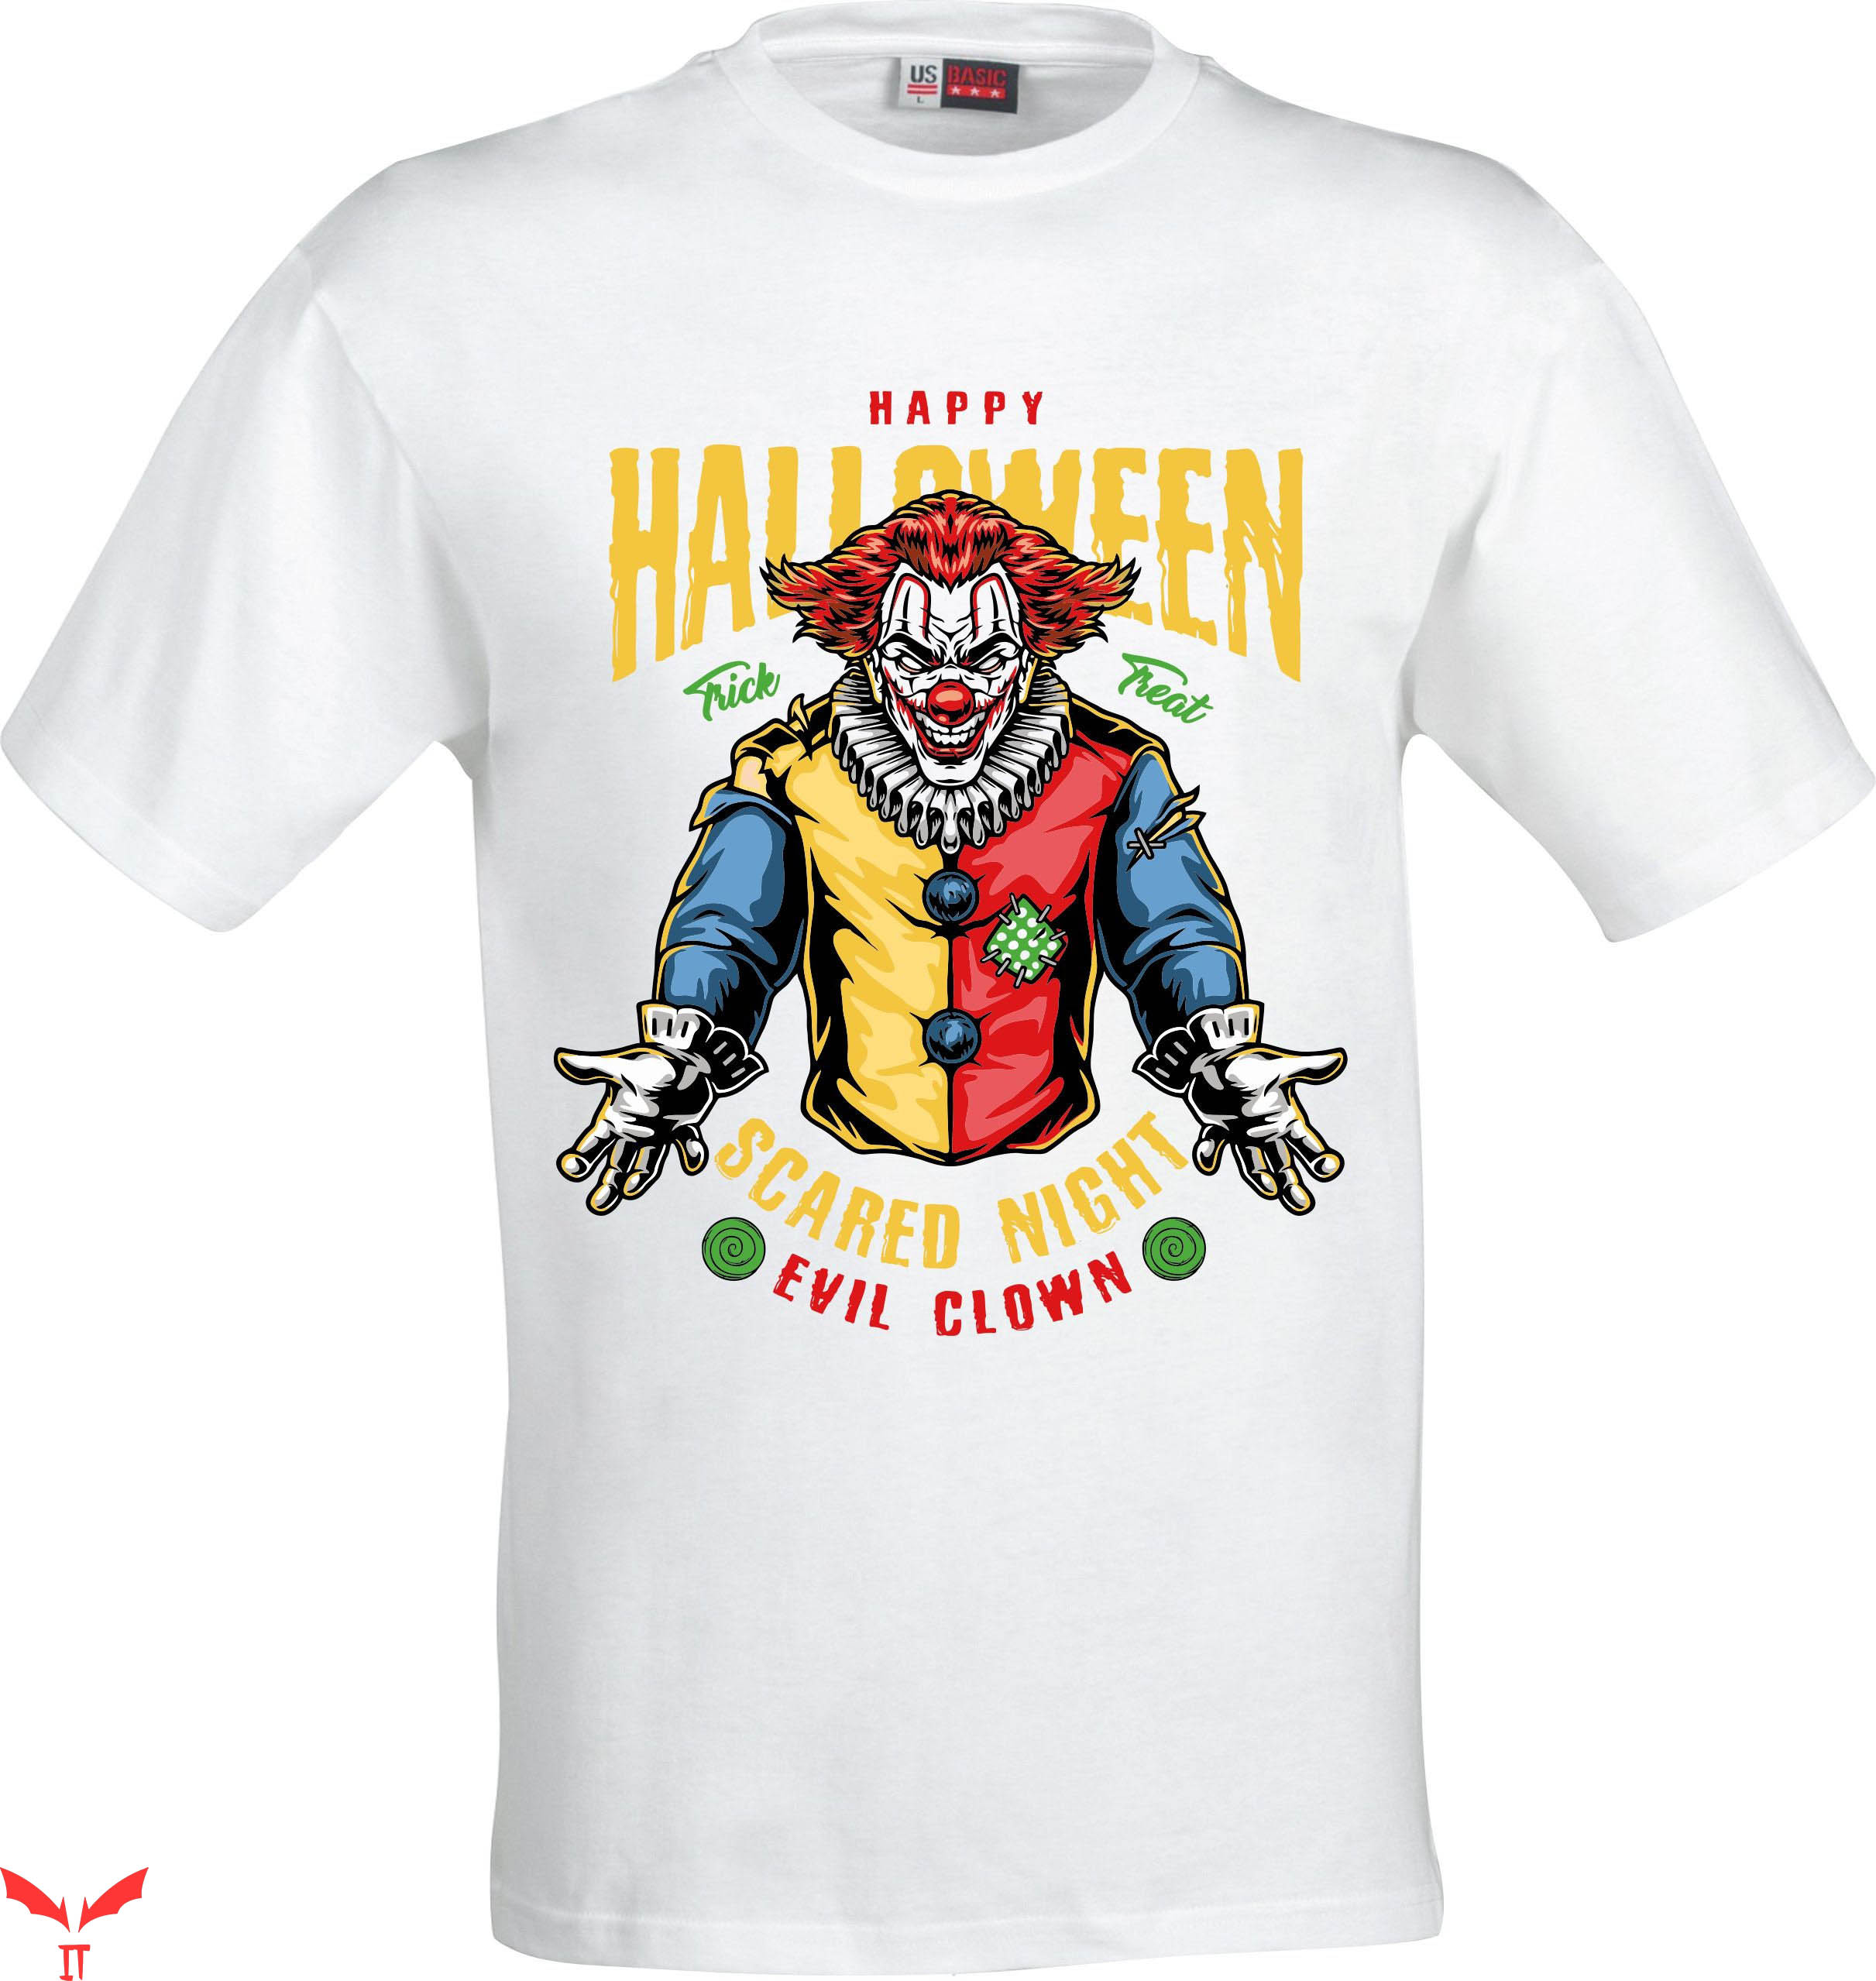 IT The Clown T-Shirt Happy Halloween Evil Clown Sublimation